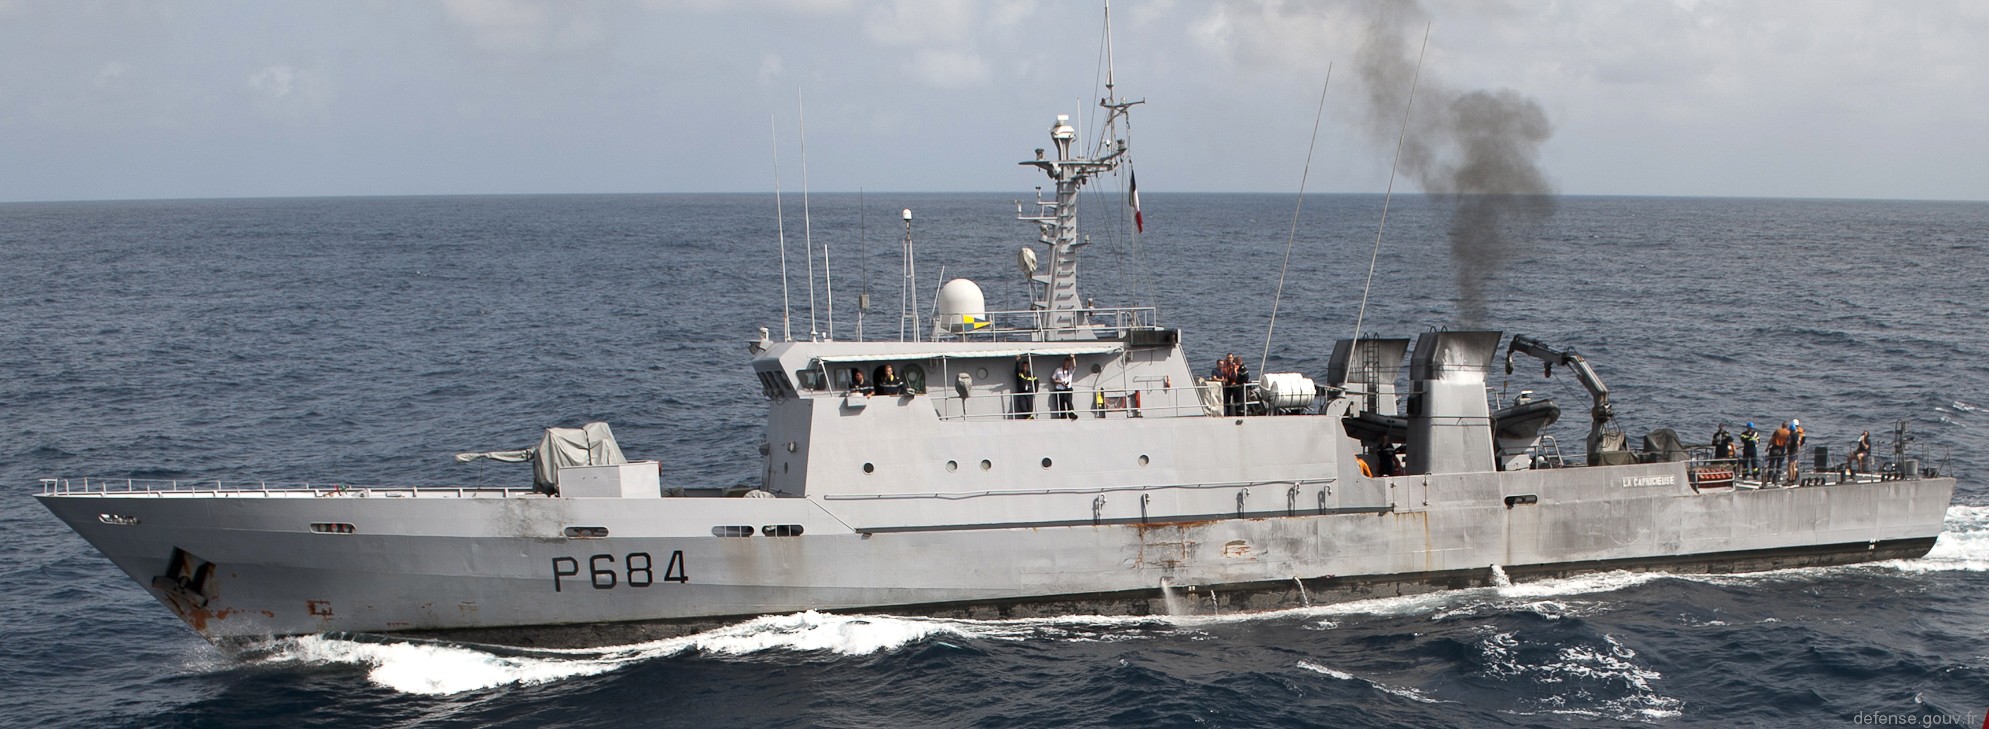 p-684 la capricieuse l'audacieuse p400 class patrol vessel french navy patrouilleur marine nationale 03